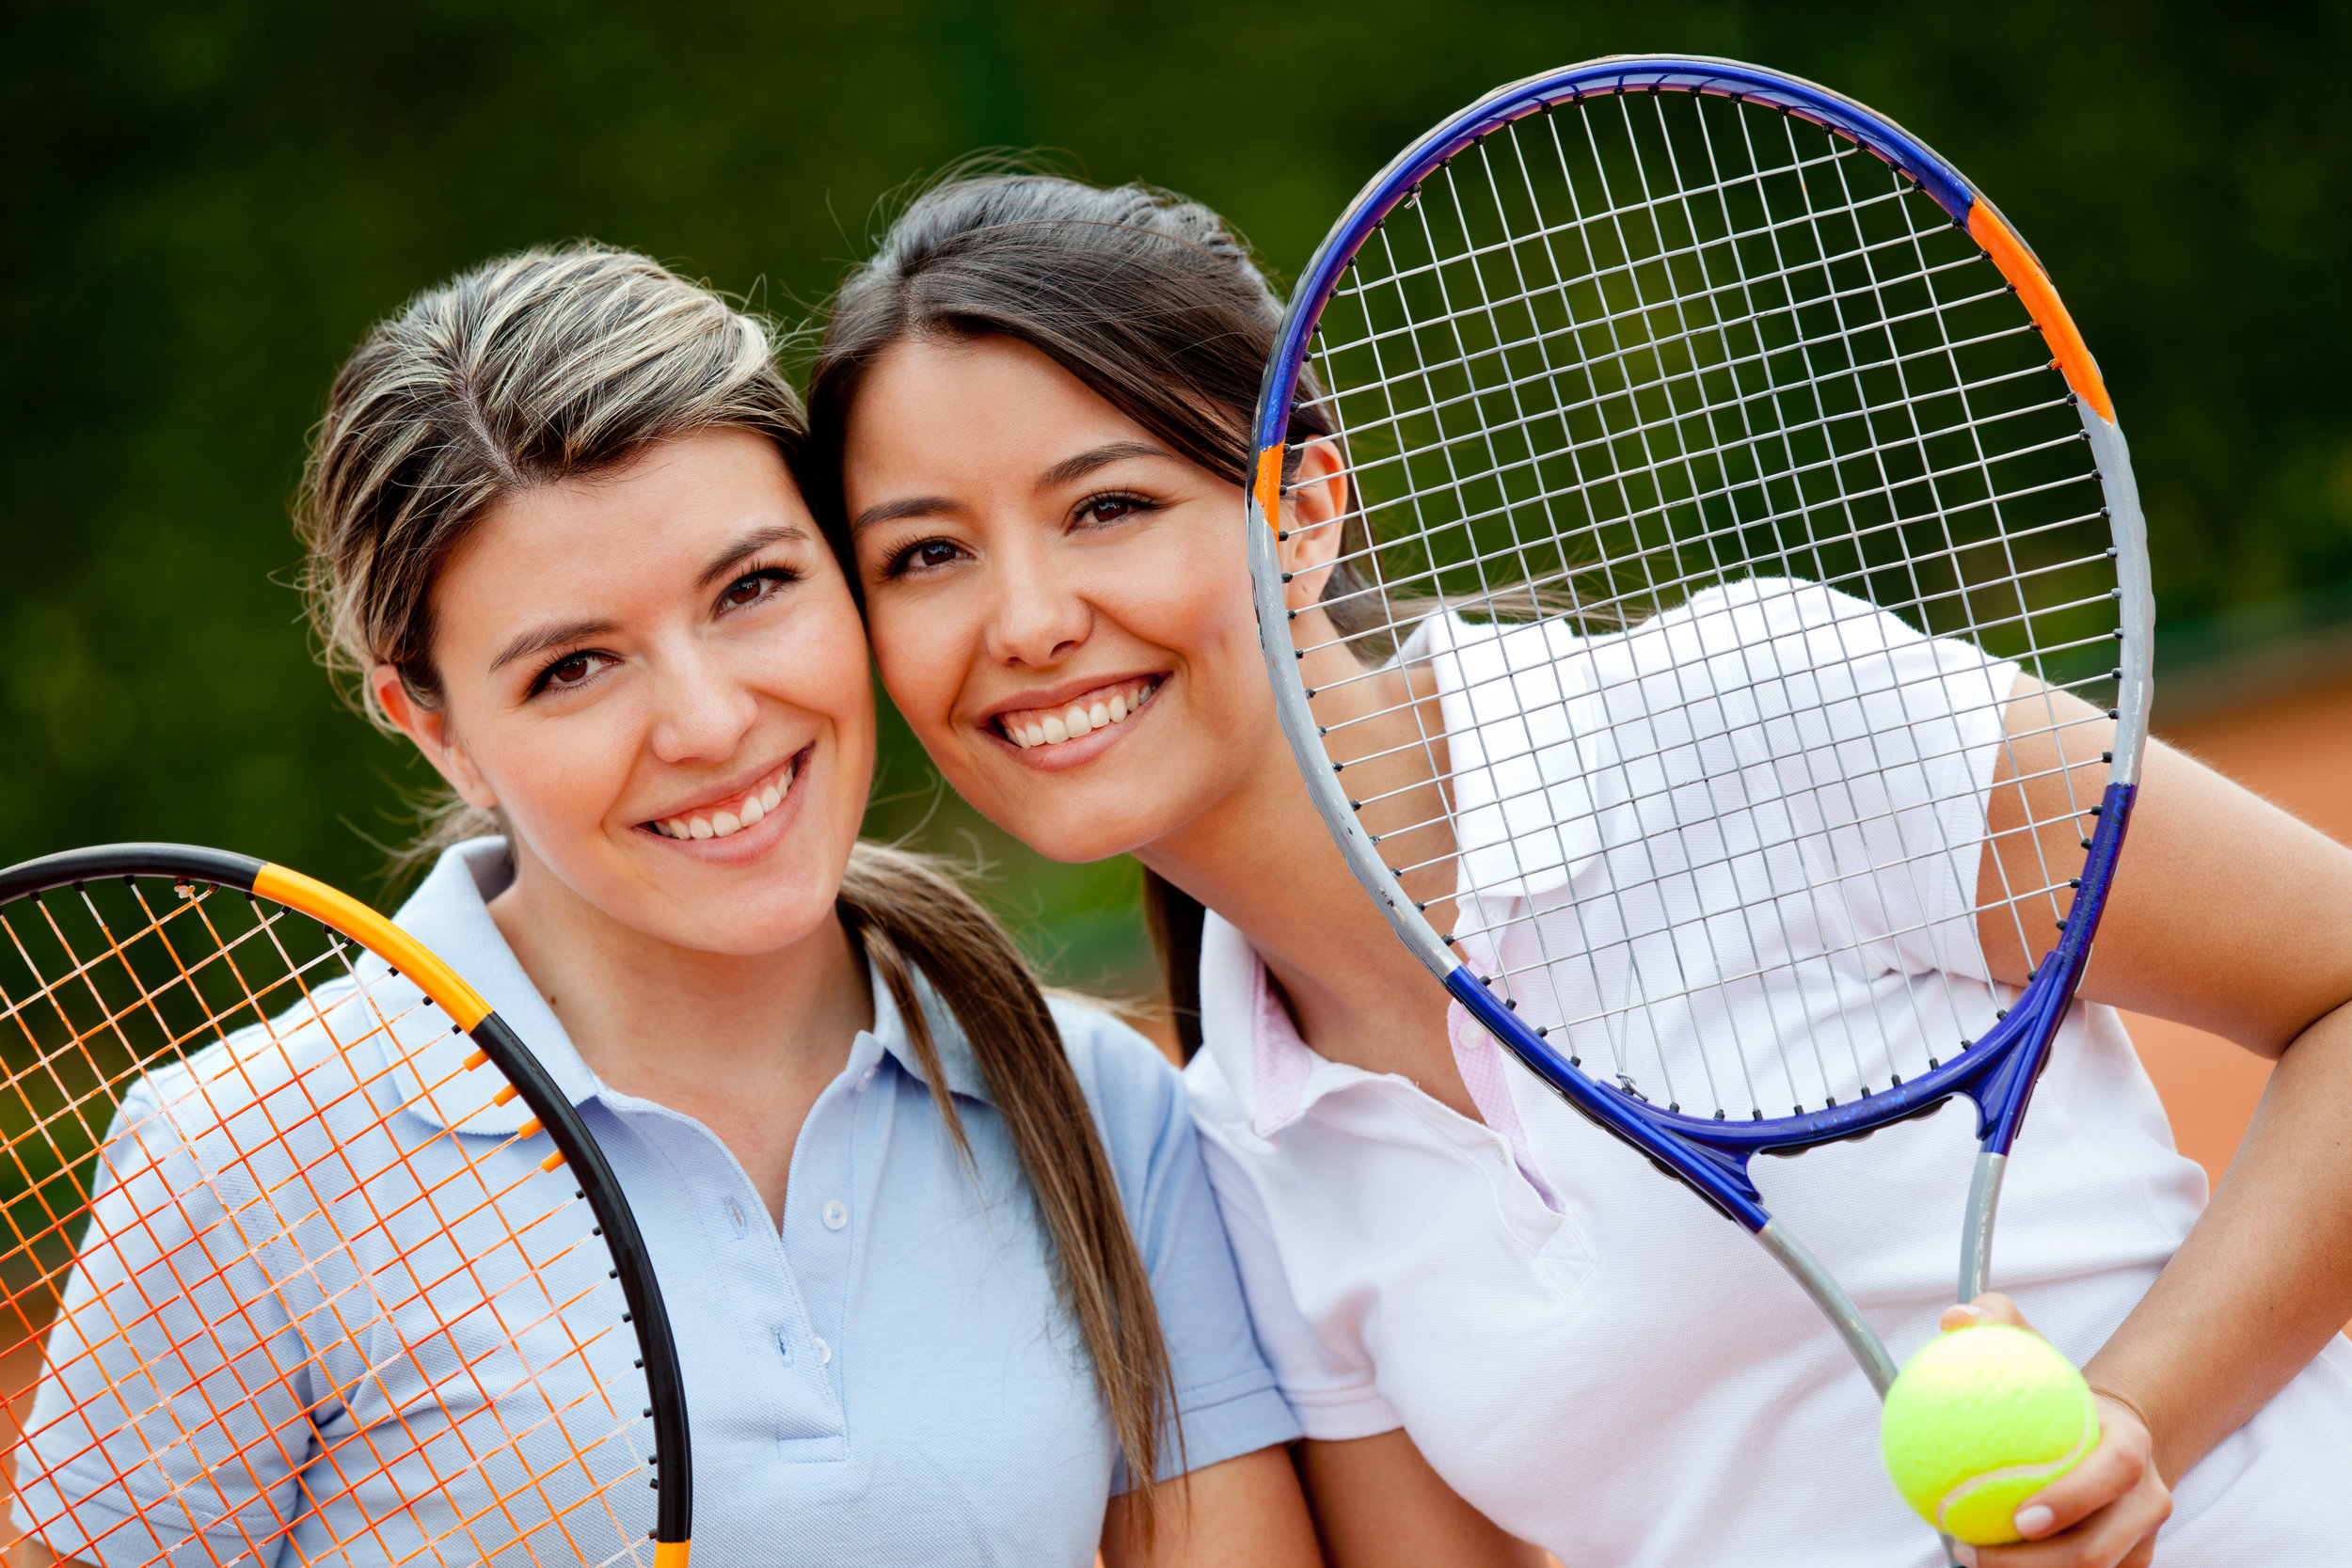 Увлекаться теннисом. Теннис вдвоем. Знаменитые теннисисты-любители. Мамы в теннисе. Групповое фото теннисисток.